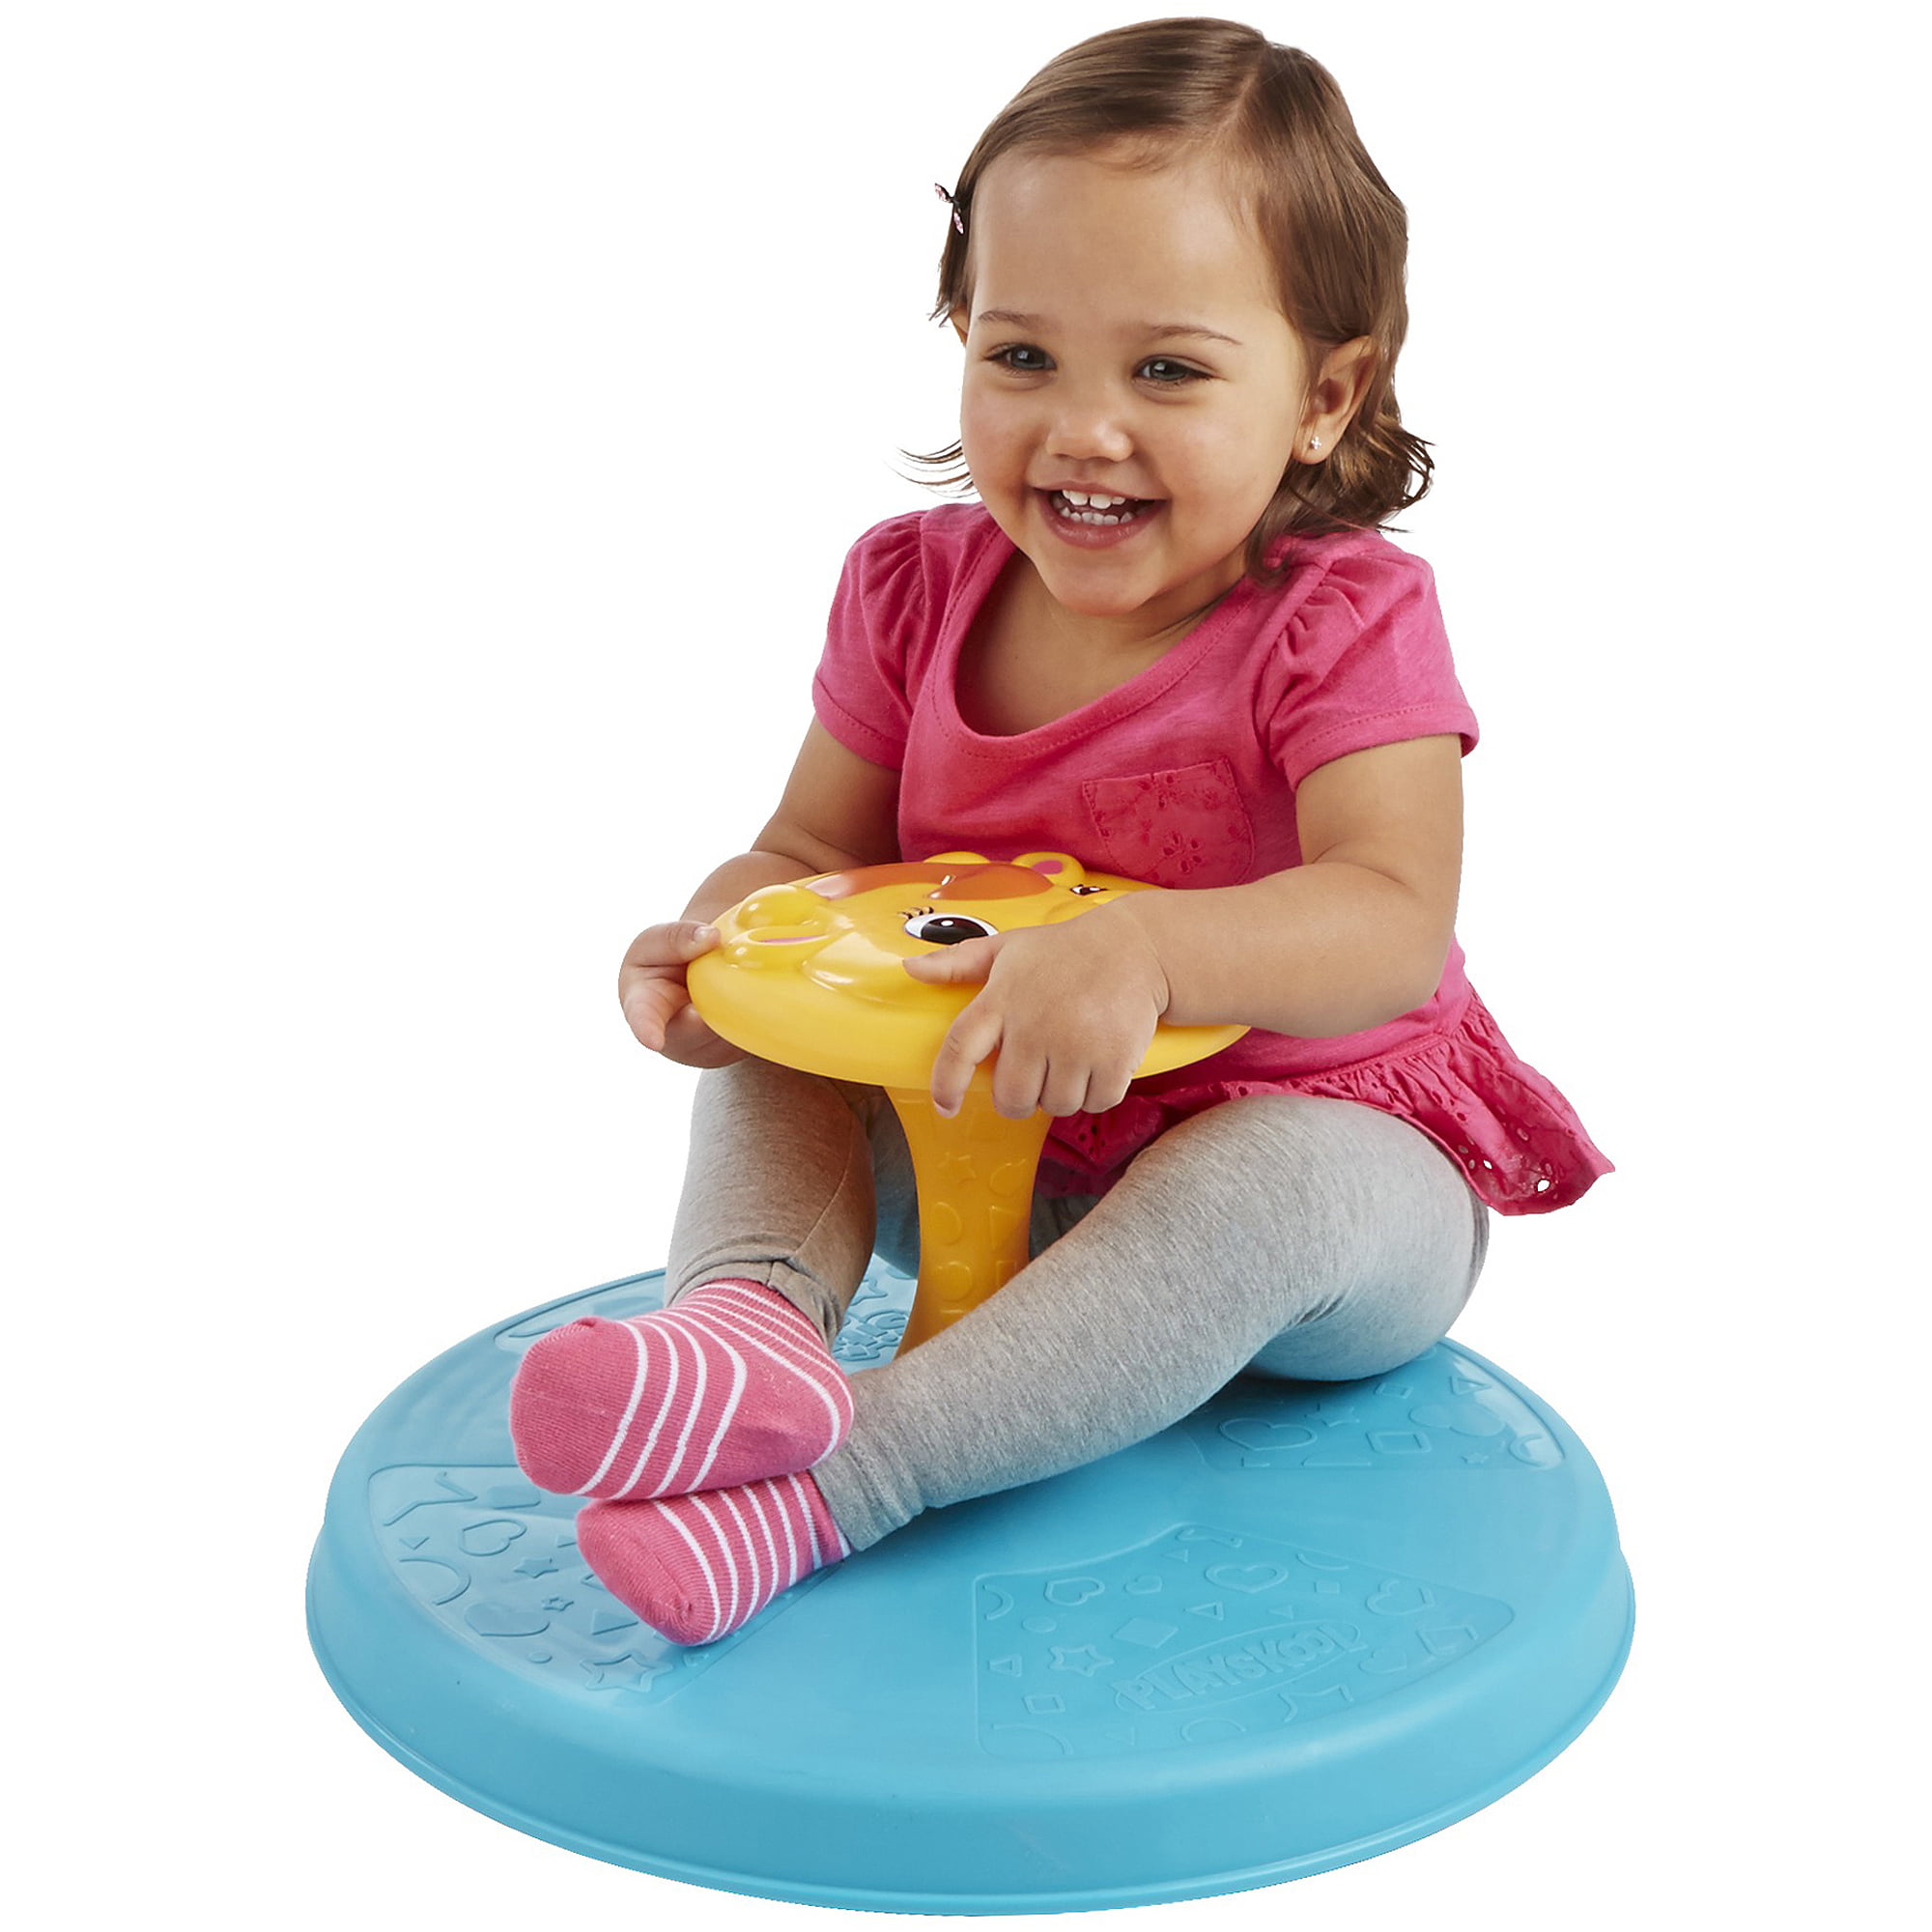 toddler sit n spin